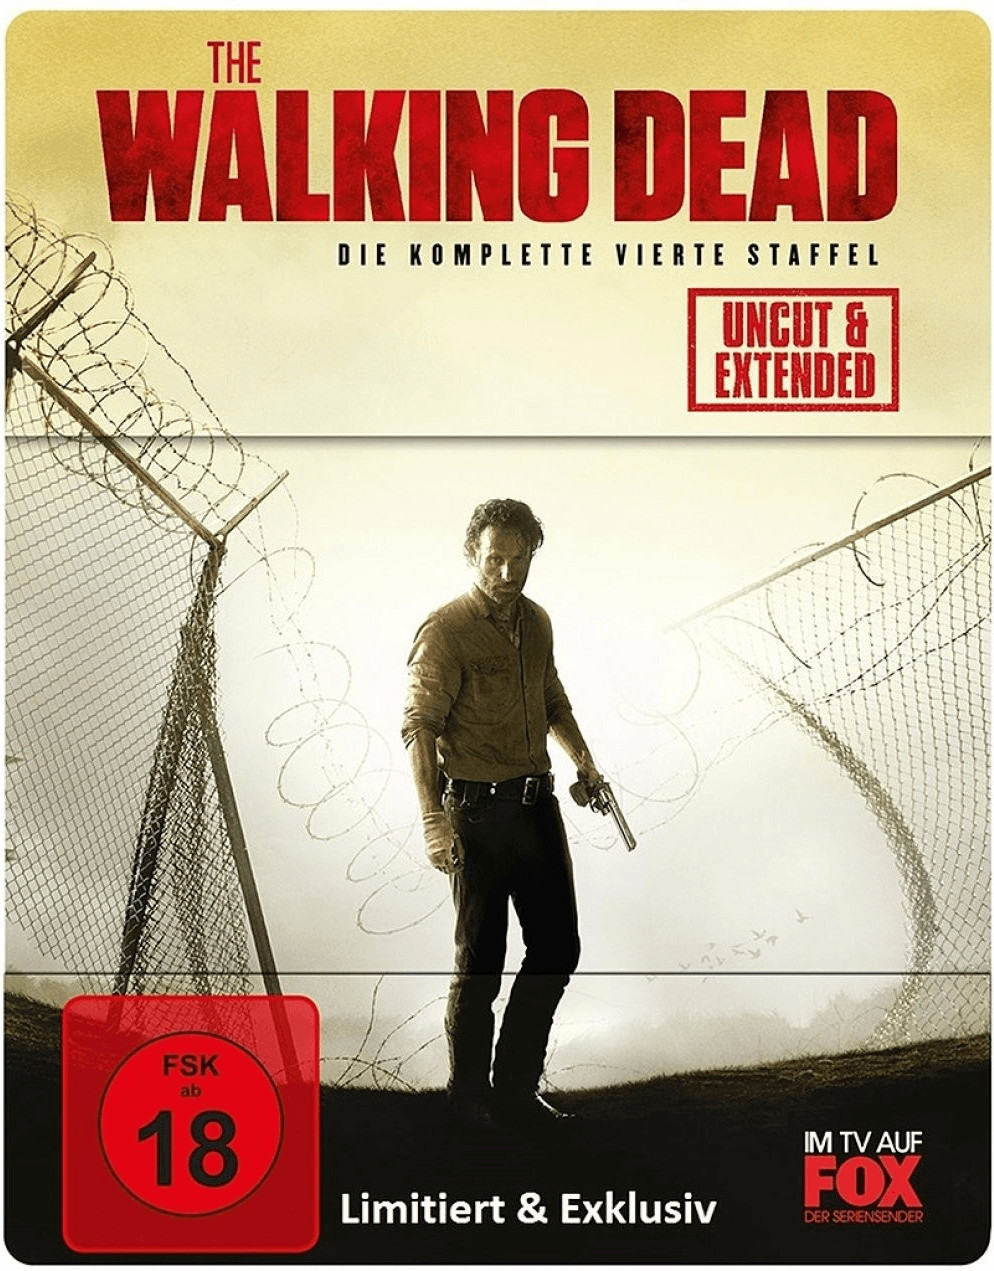 The Walking Dead - Staffel 4 (Uncut / Extended) (Steelbook) [Blu-ray]